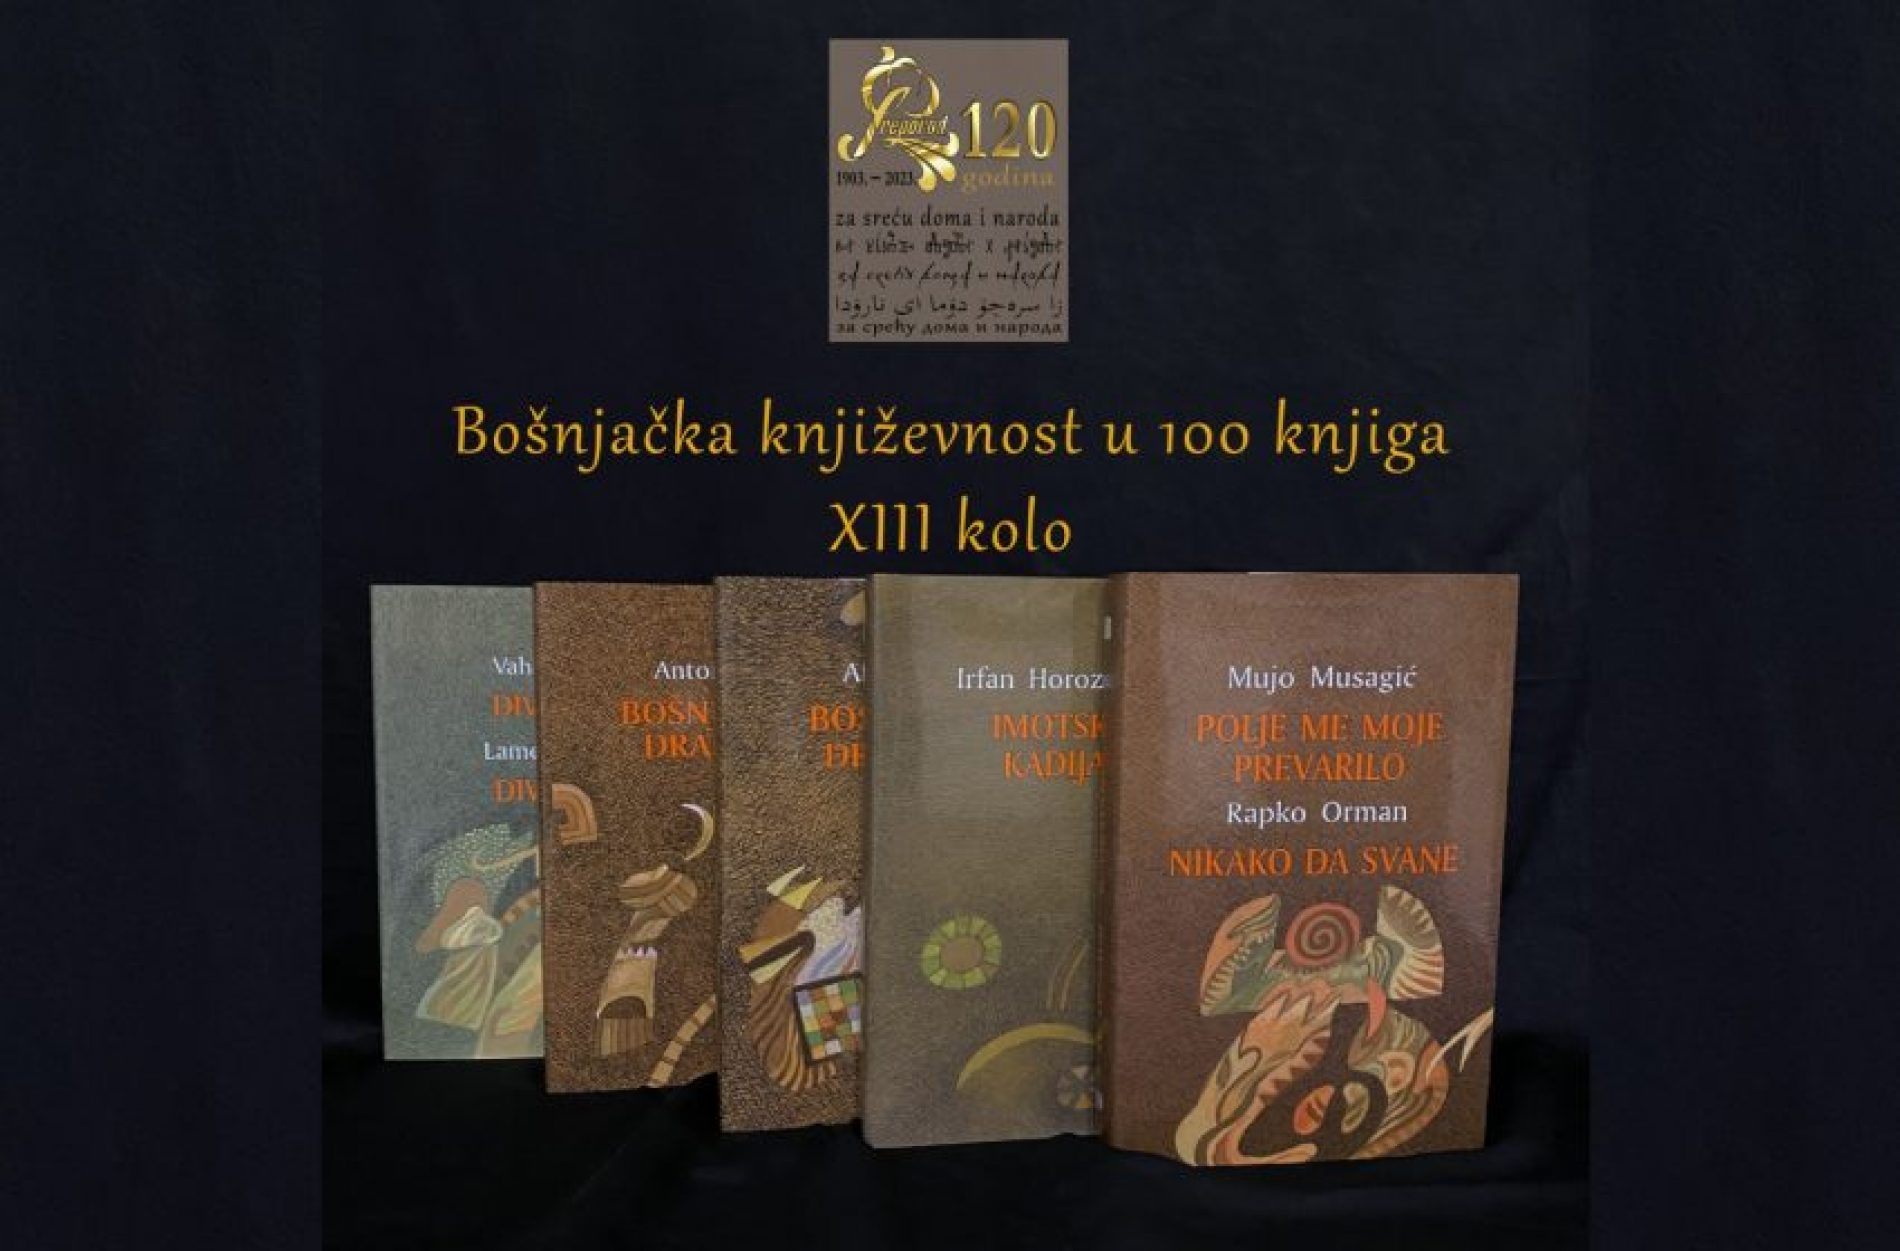 Objavljeno 13. kolo kapitalne edicije “Bošnjačka književnost u 100 knjiga”